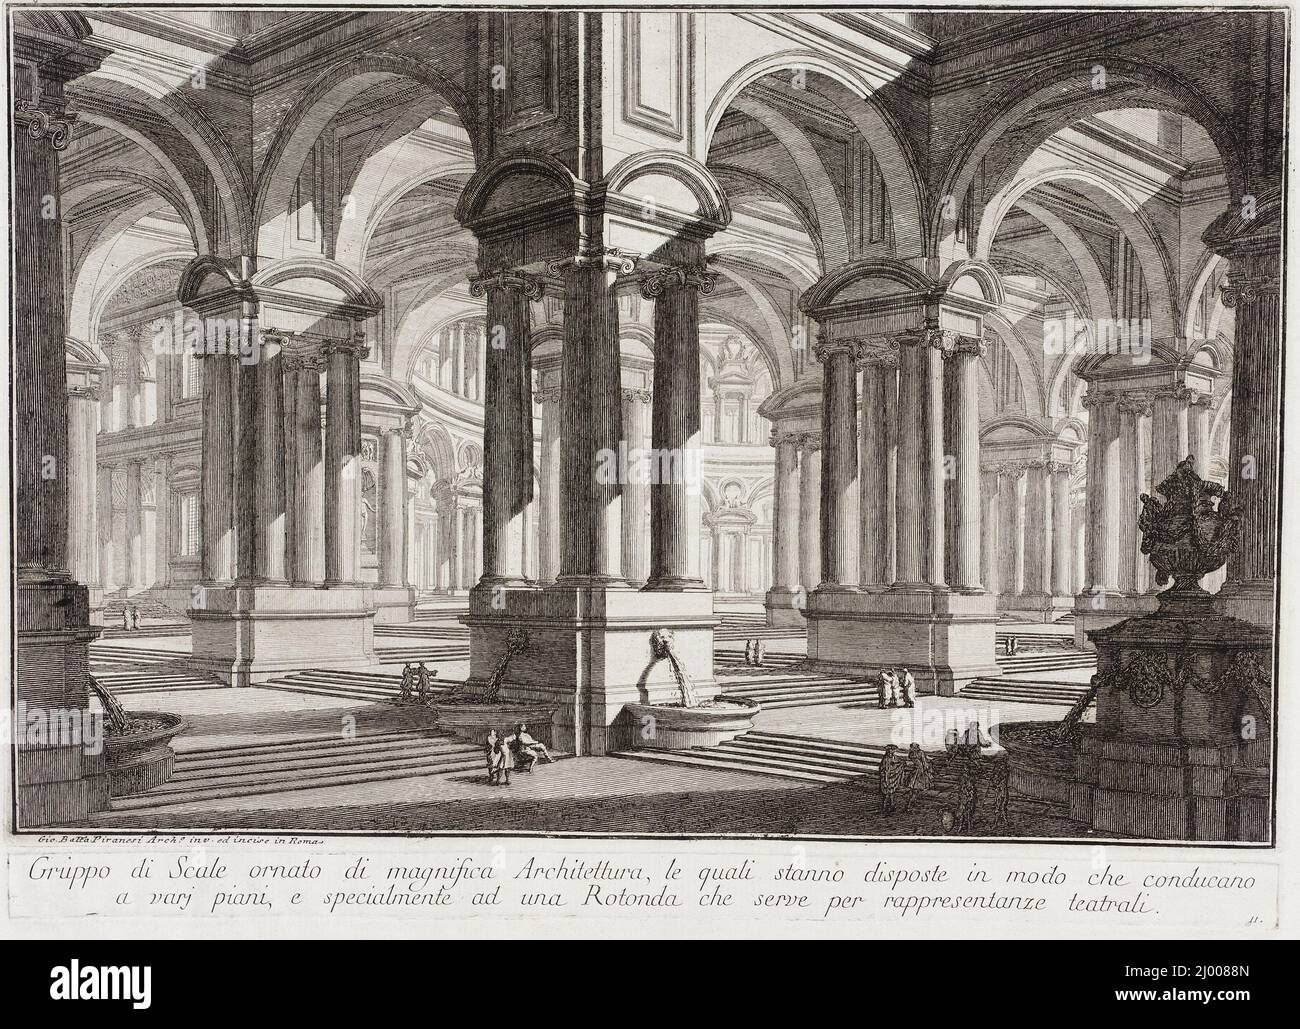 Magnifique espace architectural. Giovanni Battista Piranesi (Italie, Mogliano, 1720-1778). Italie, vers 1743. Gravures; gravures. Gravure avec gravure et point sec Banque D'Images